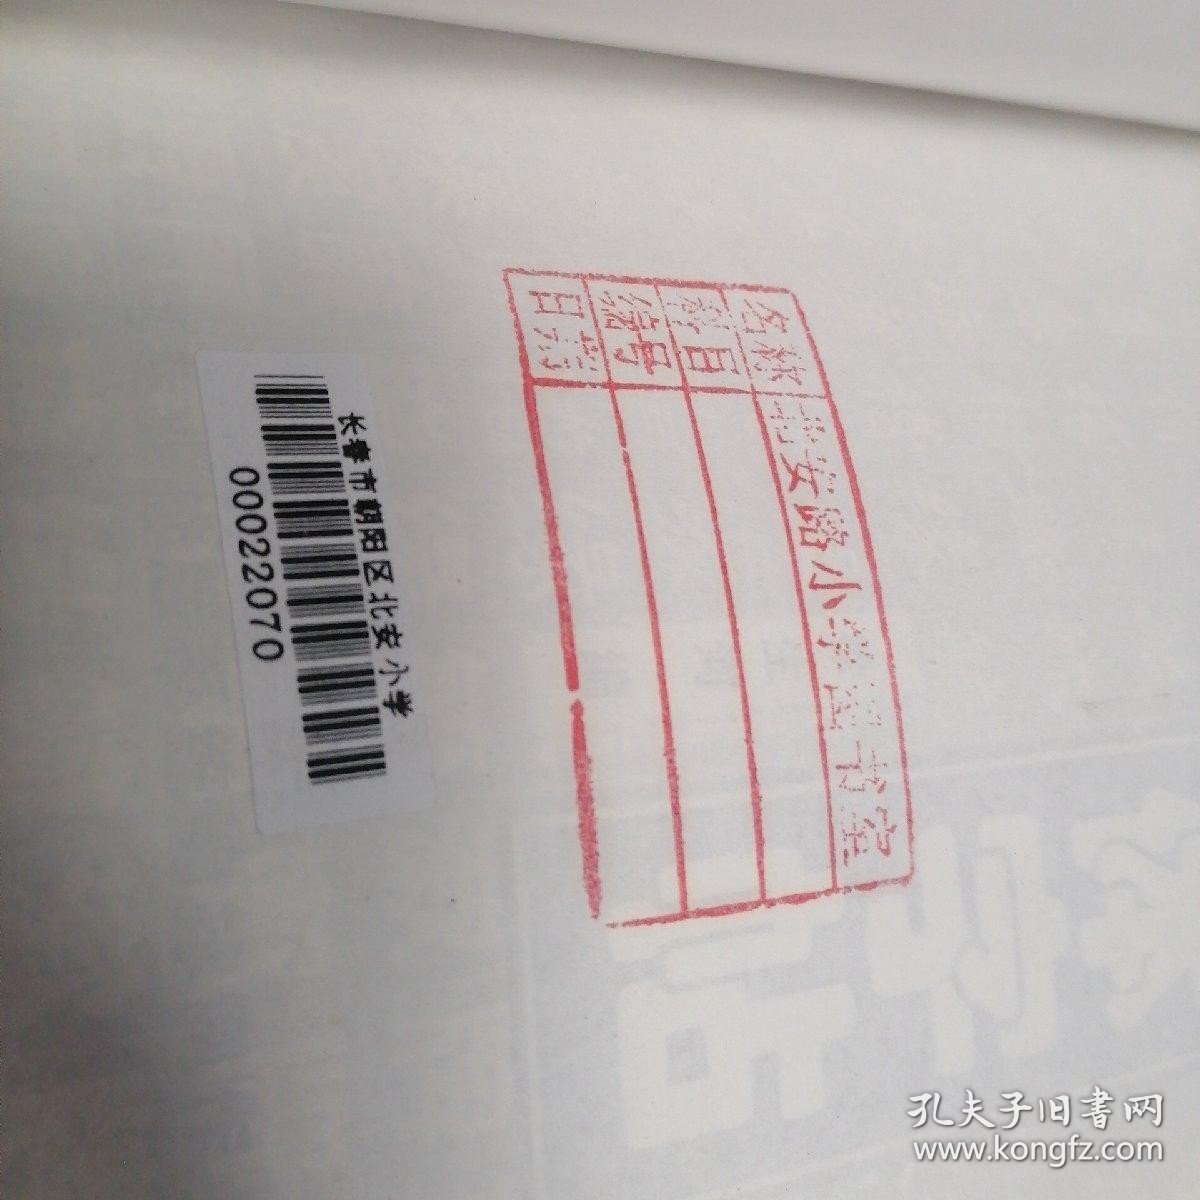 十五体字帖:工艺美术实用字体资料